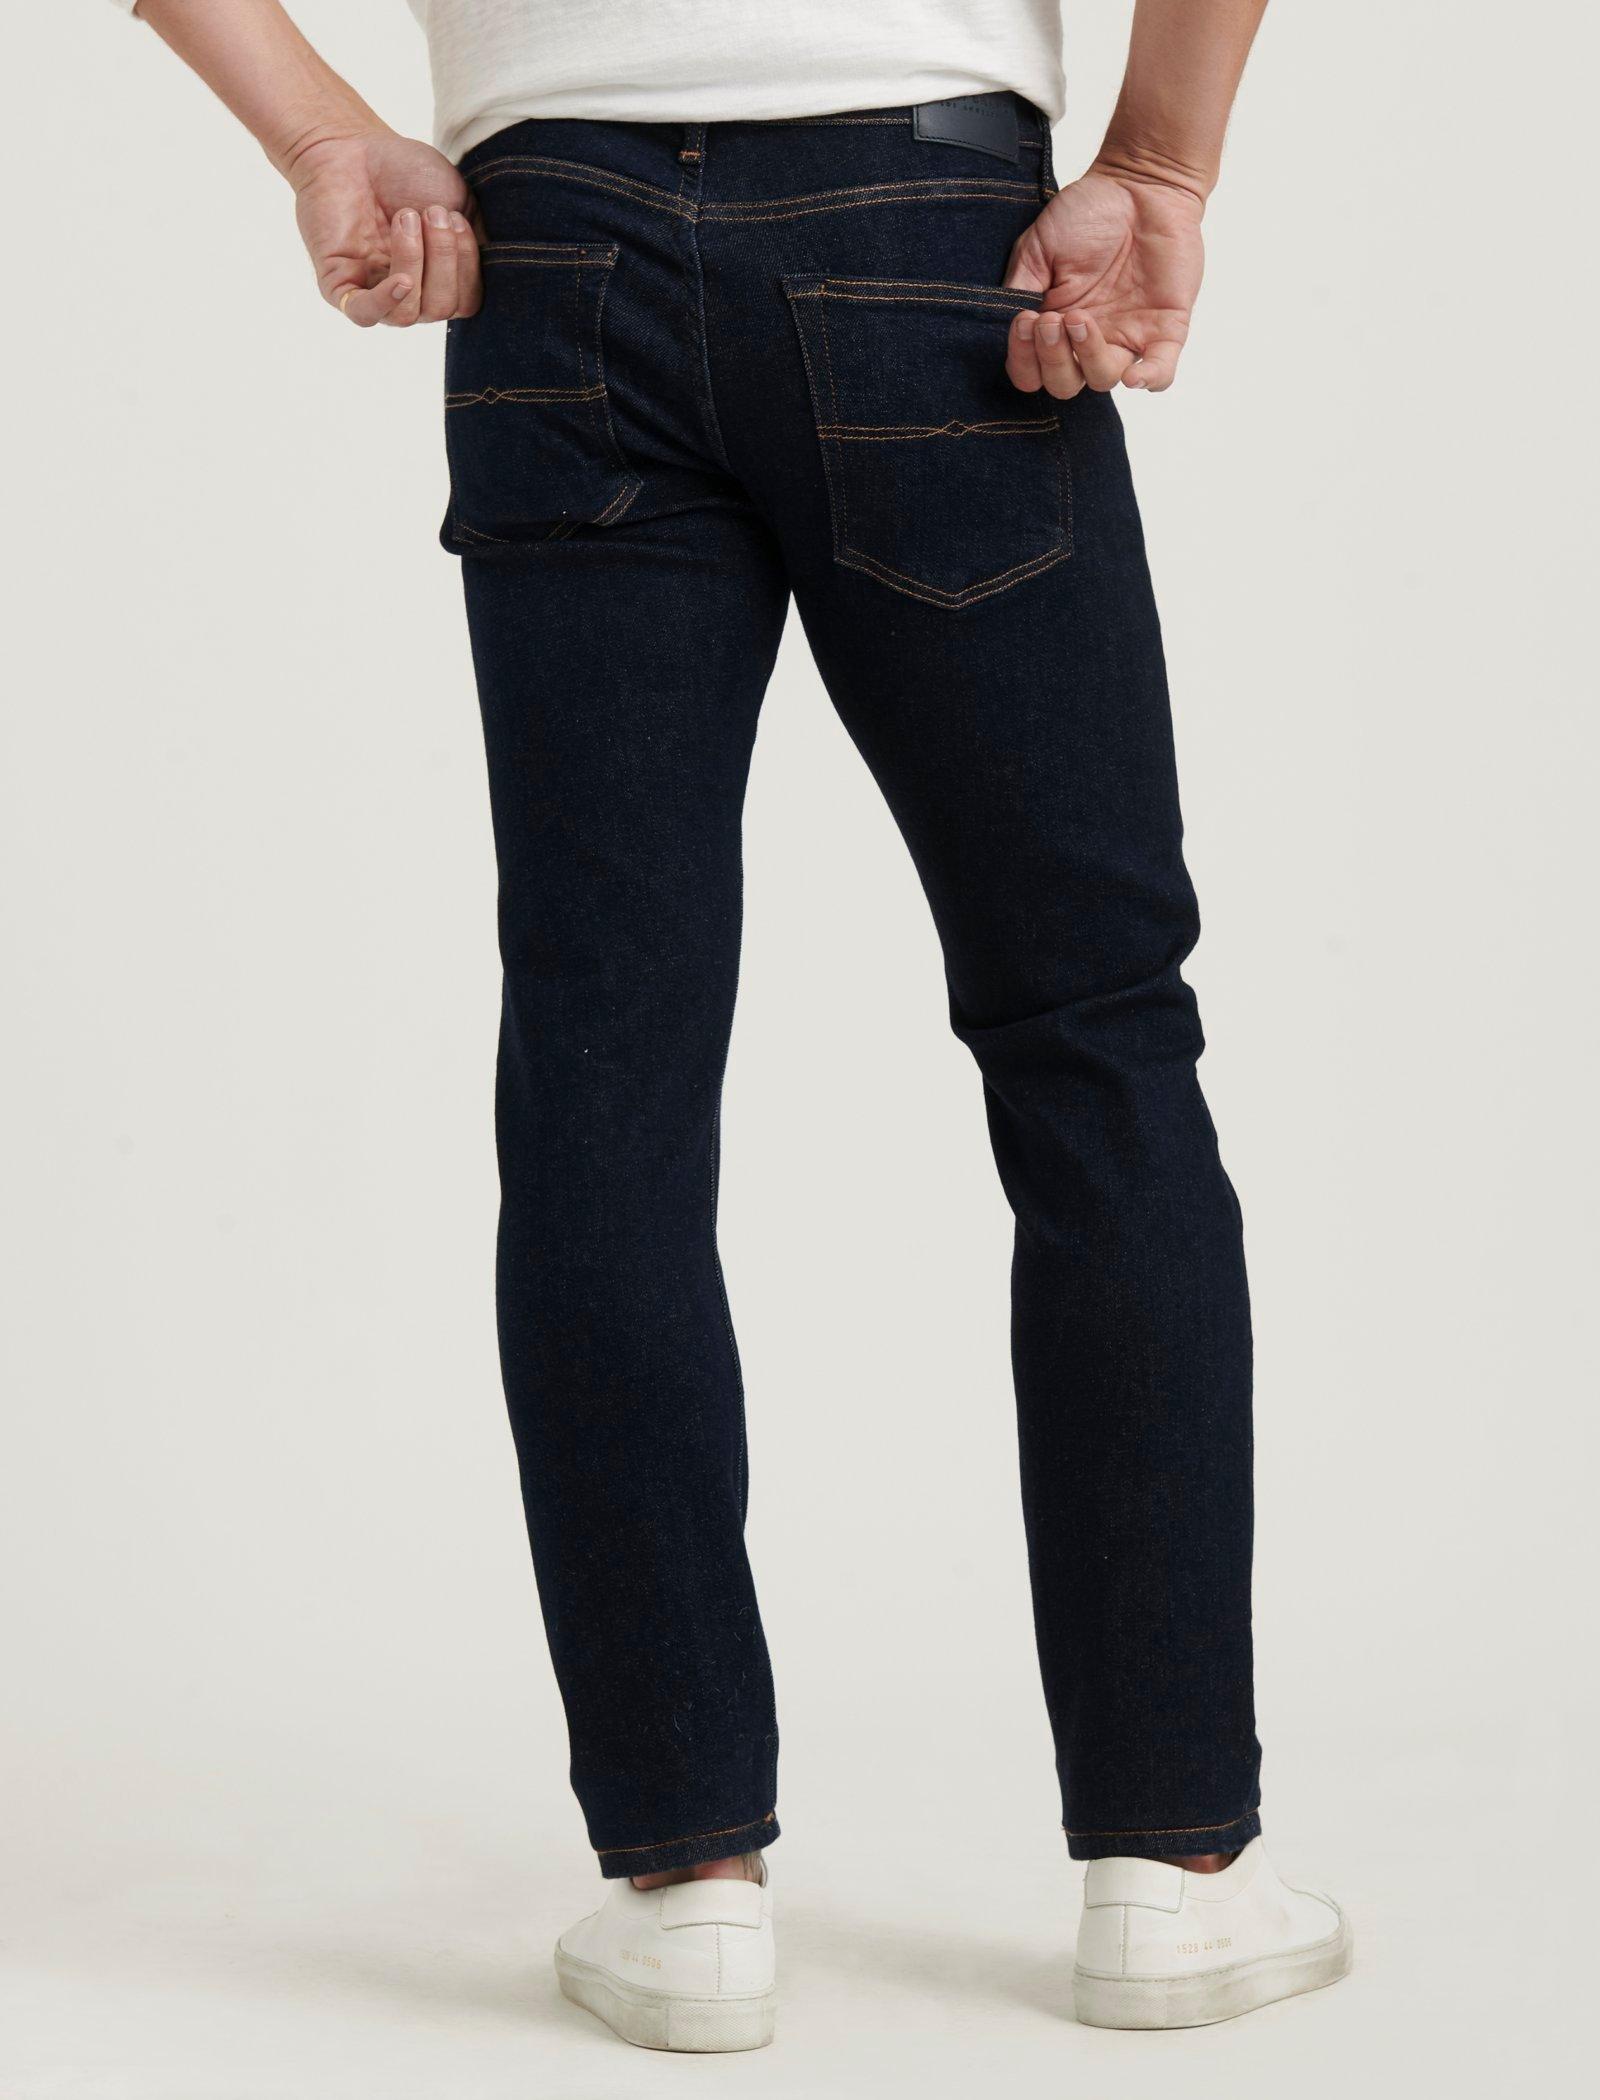 Lucky Brand Jeans 110 Slim Advanced Stretch Jean